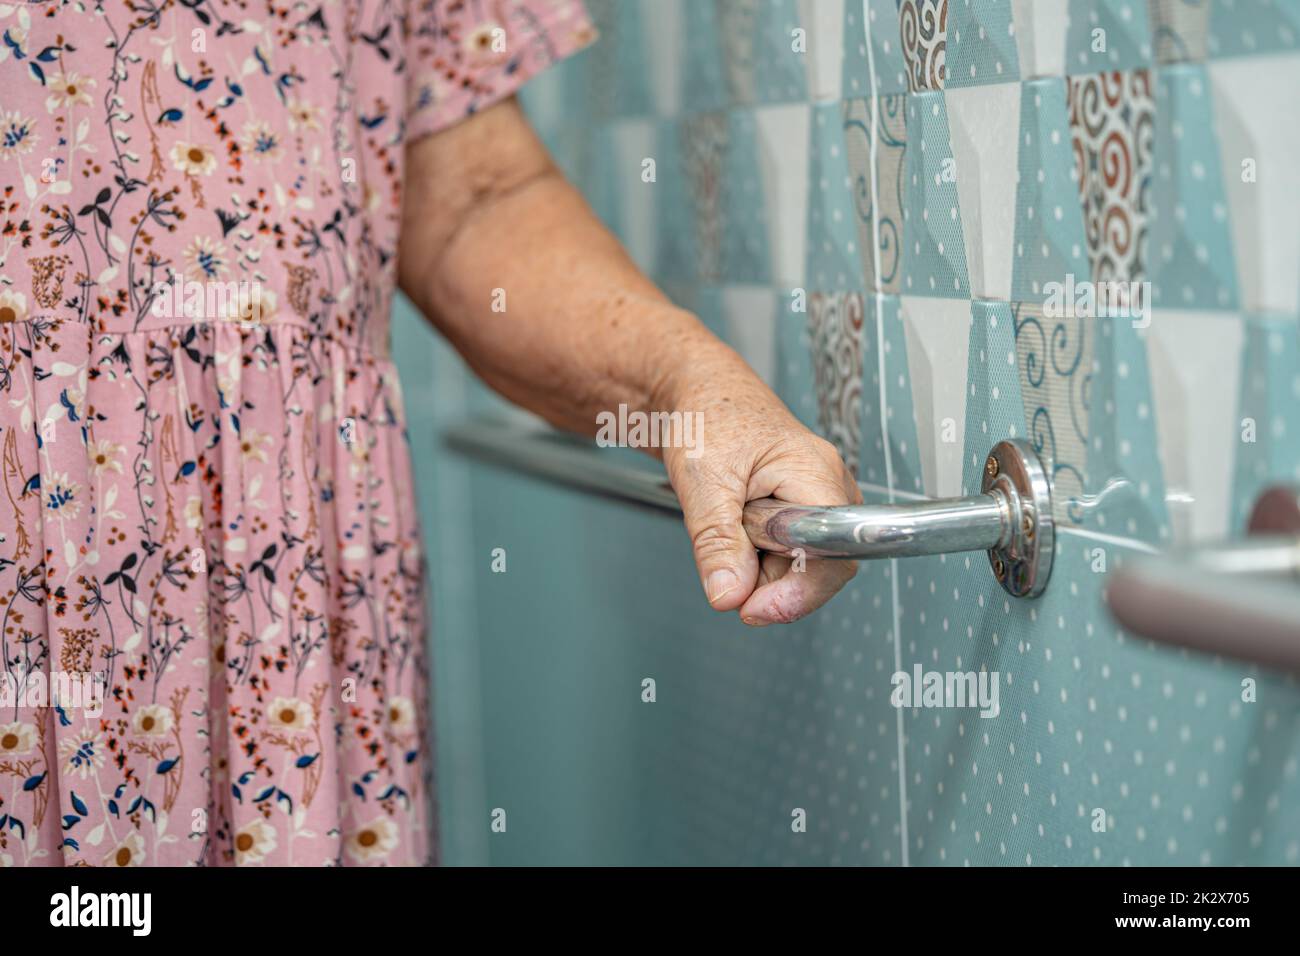 Asiatique senior ou âgée vieille femme patiente utiliser toilettes salle de bains poignée de sécurité dans la salle d'hôpital de soins infirmiers, sain solide concept médical. Banque D'Images